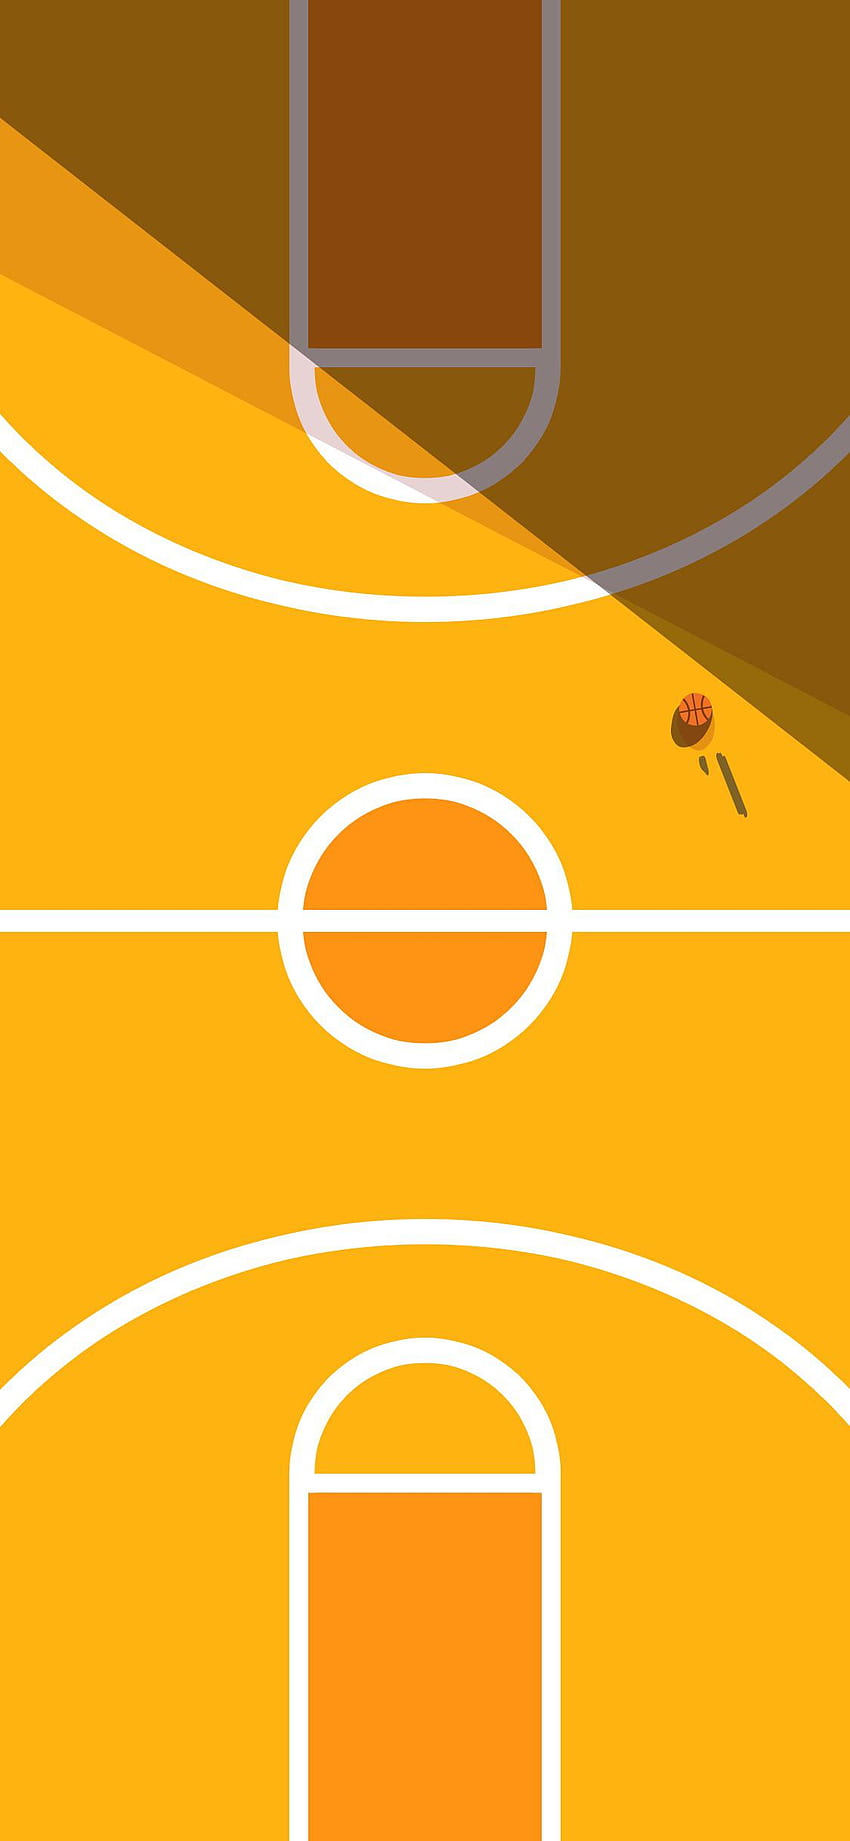 OC Помолиха да направя минималистично баскетболно игрище след моето футболно игрище вчера (Друг цвят в коментарите): iphone HD тапет за телефон